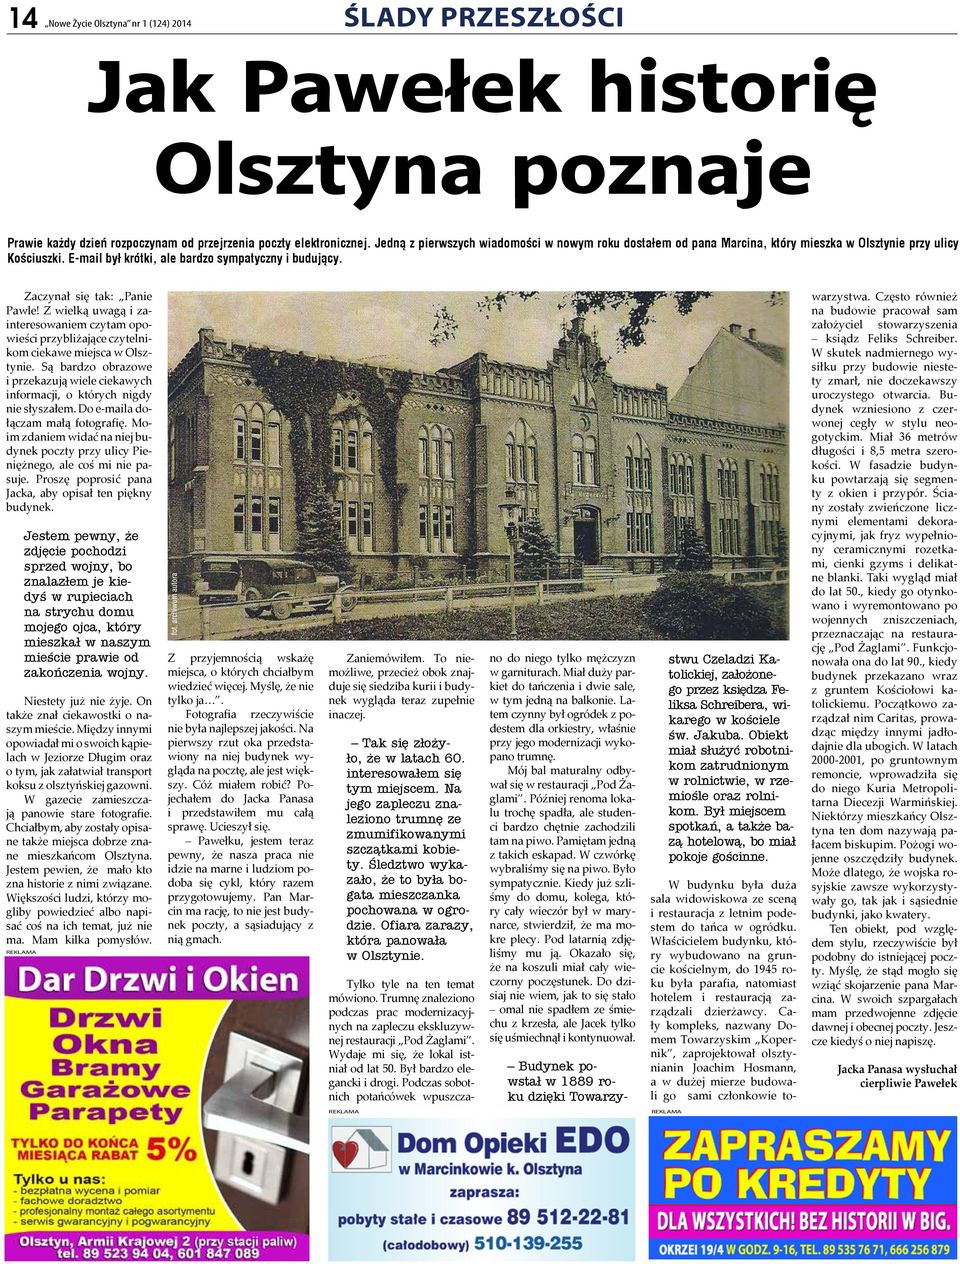 Zaczynał się tak: Panie Pawle! Z wielką uwagą i zainteresowaniem czytam opowieści przybliżające czytelnikom ciekawe miejsca w Olsztynie.